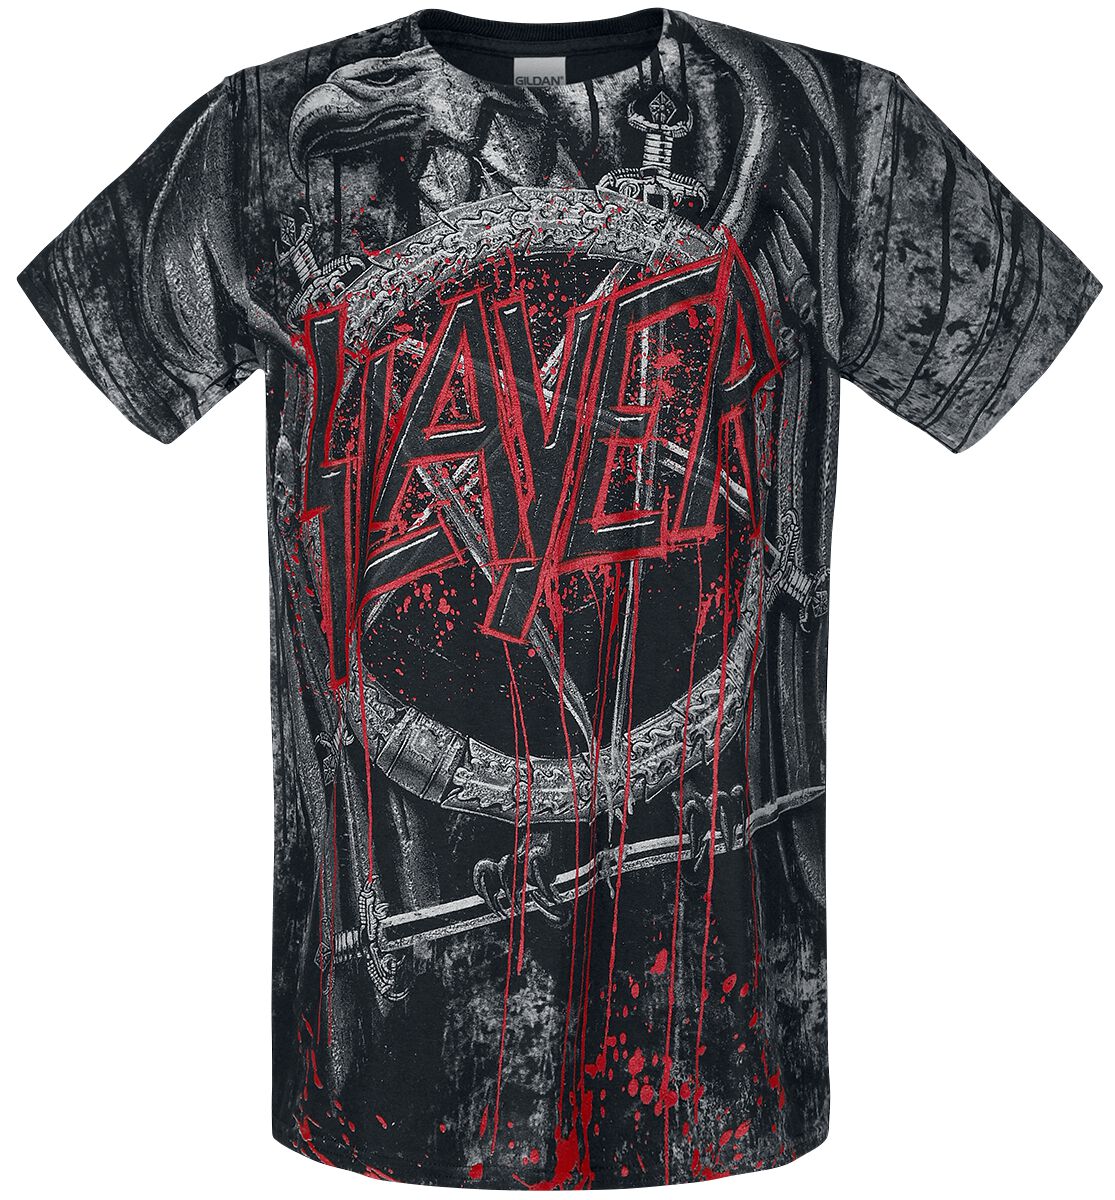 Slayer T-Shirt - Black Eagle Allover - S bis L - für Männer - Größe M - allover  - Lizenziertes Merchandise!